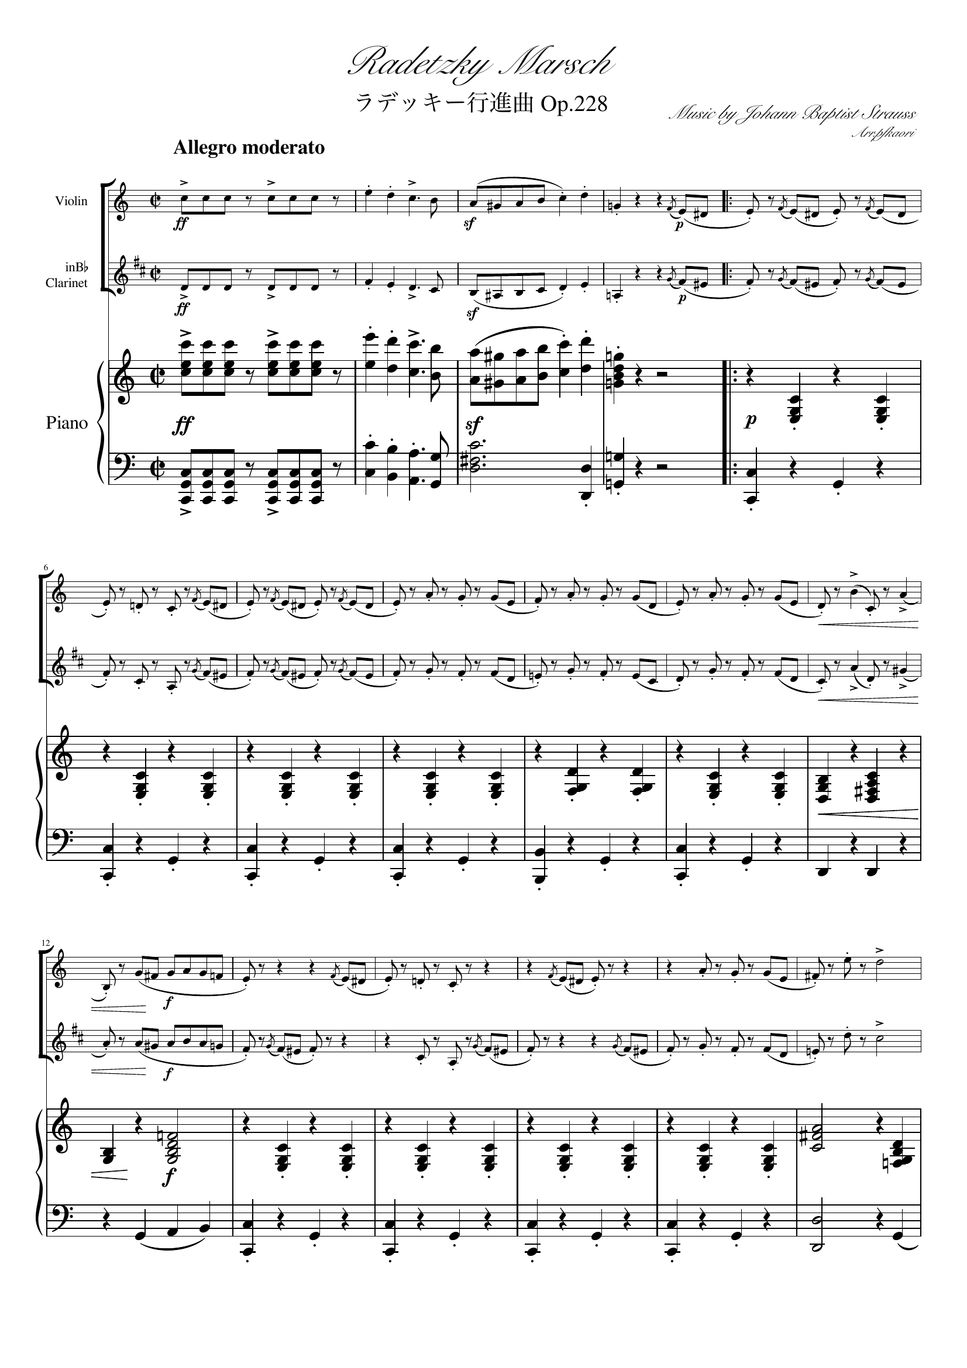 ヨハンシュトラウス1世 - ラデッキー行進曲 (C・ピアノトリオ/ヴァイオリン&クラリネット) by pfkaori